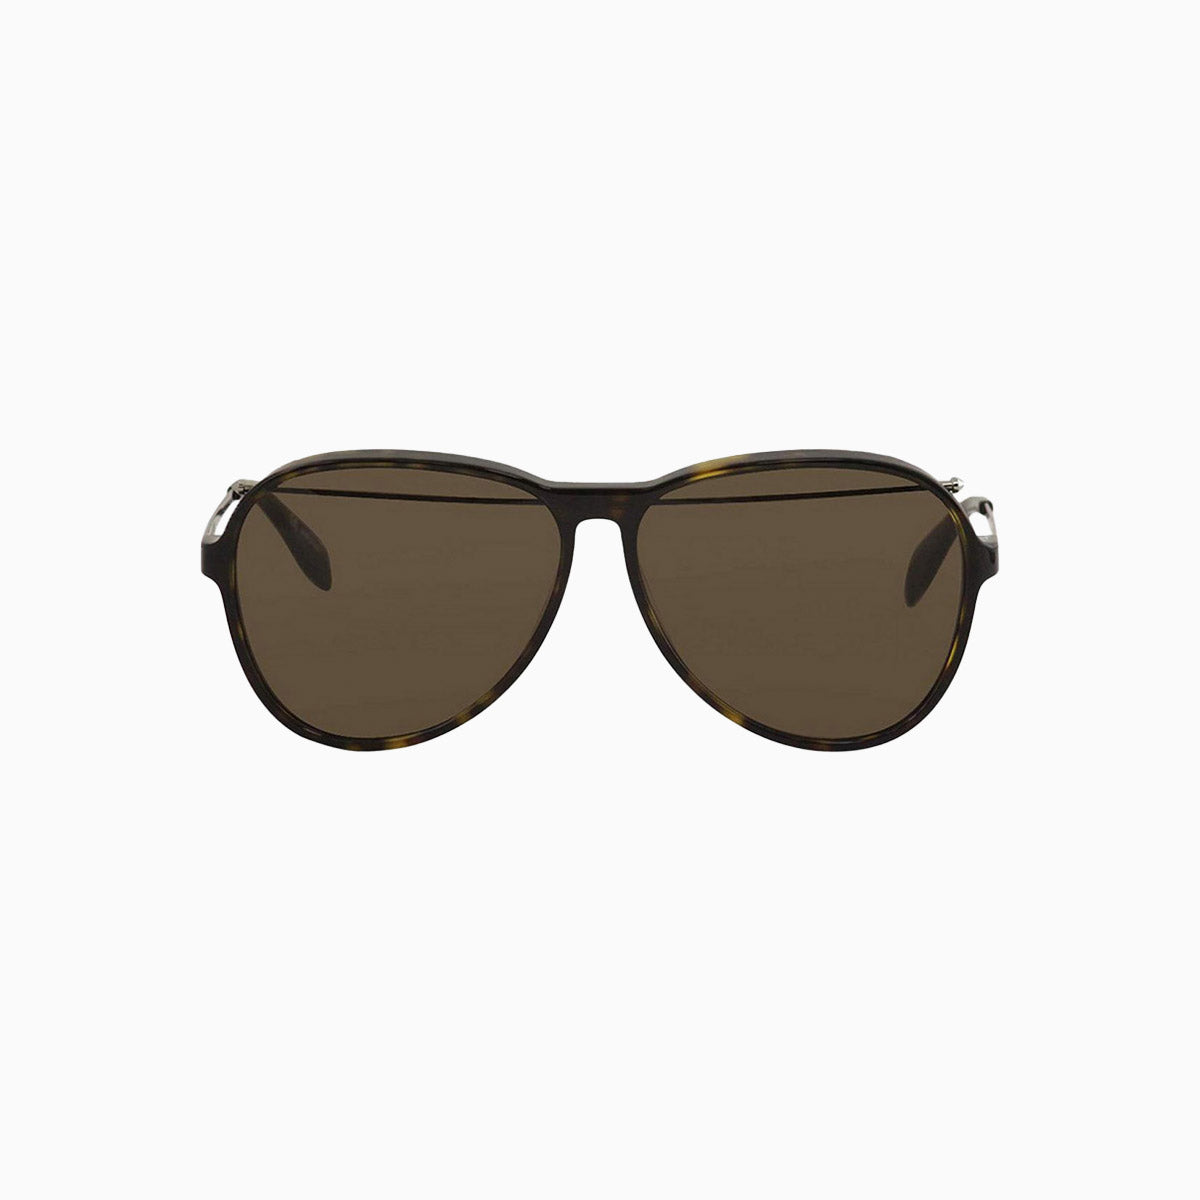 alexander-mcqueen-ruthenium-havana-brown-sunglasses-am0193s-002